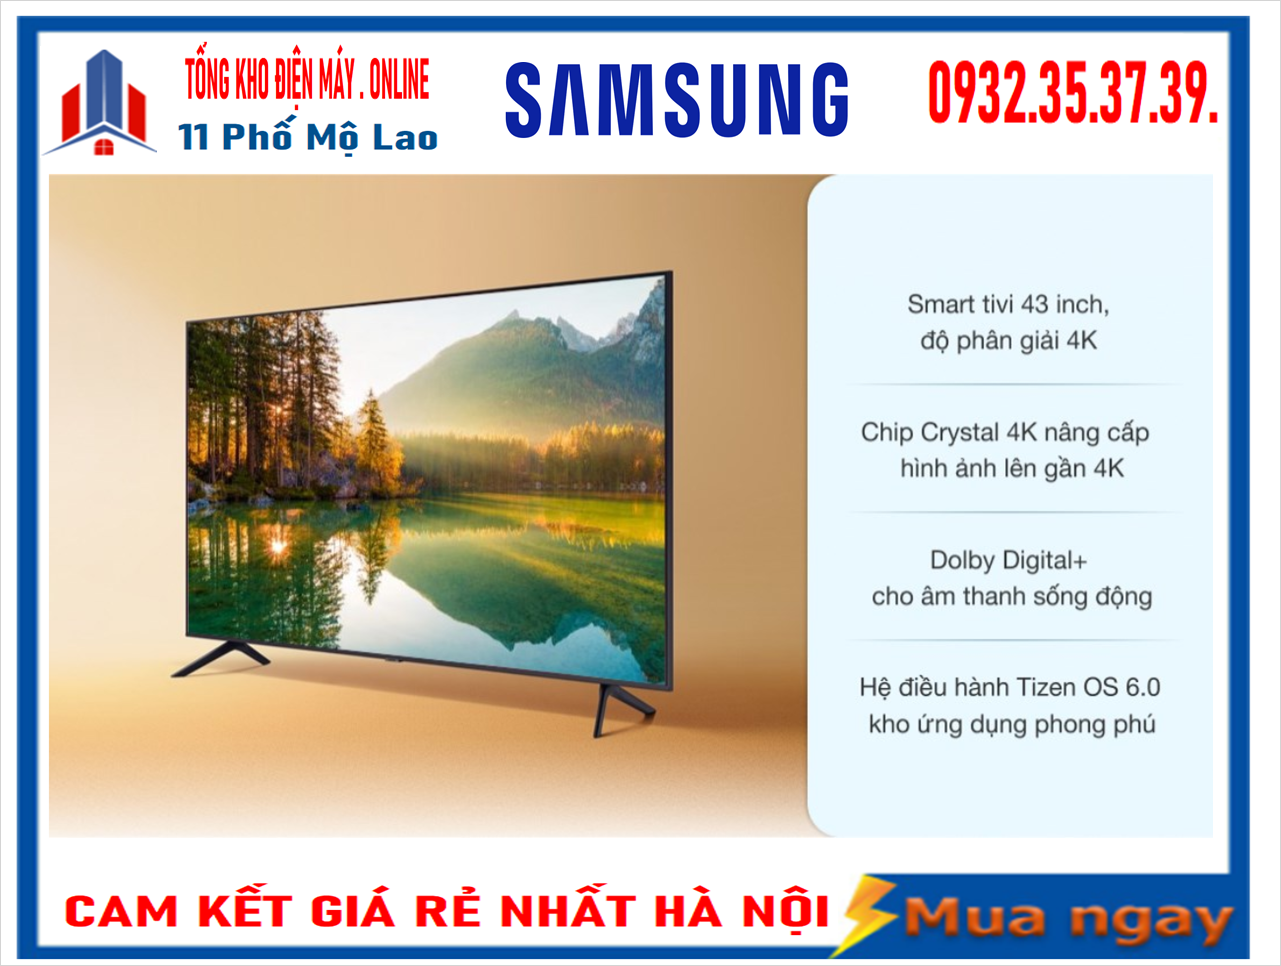 10 lỗi màn hình tivi Samsung và cách khắc phục tại nhà | websosanh.vn